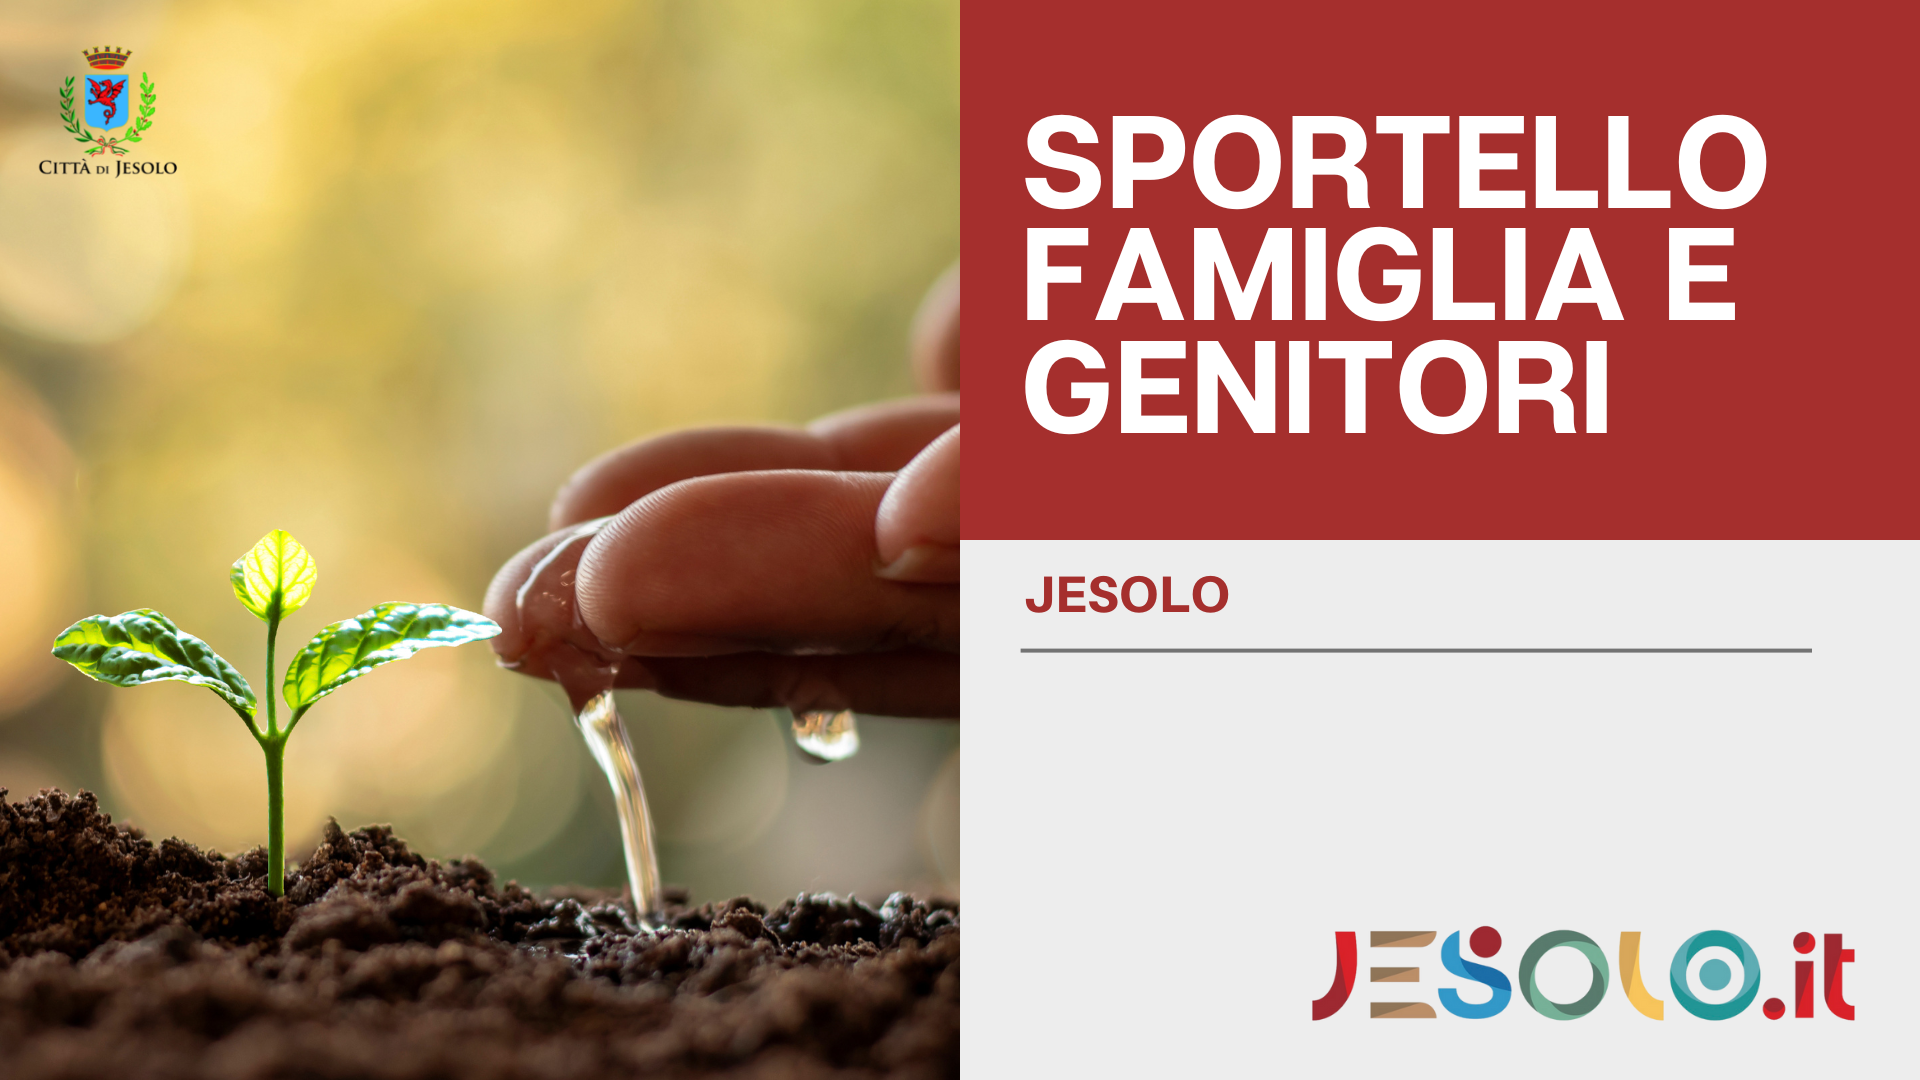 Sportello famiglia e genitori - Jesolo - immagine di una mano che innafifa un germoglio